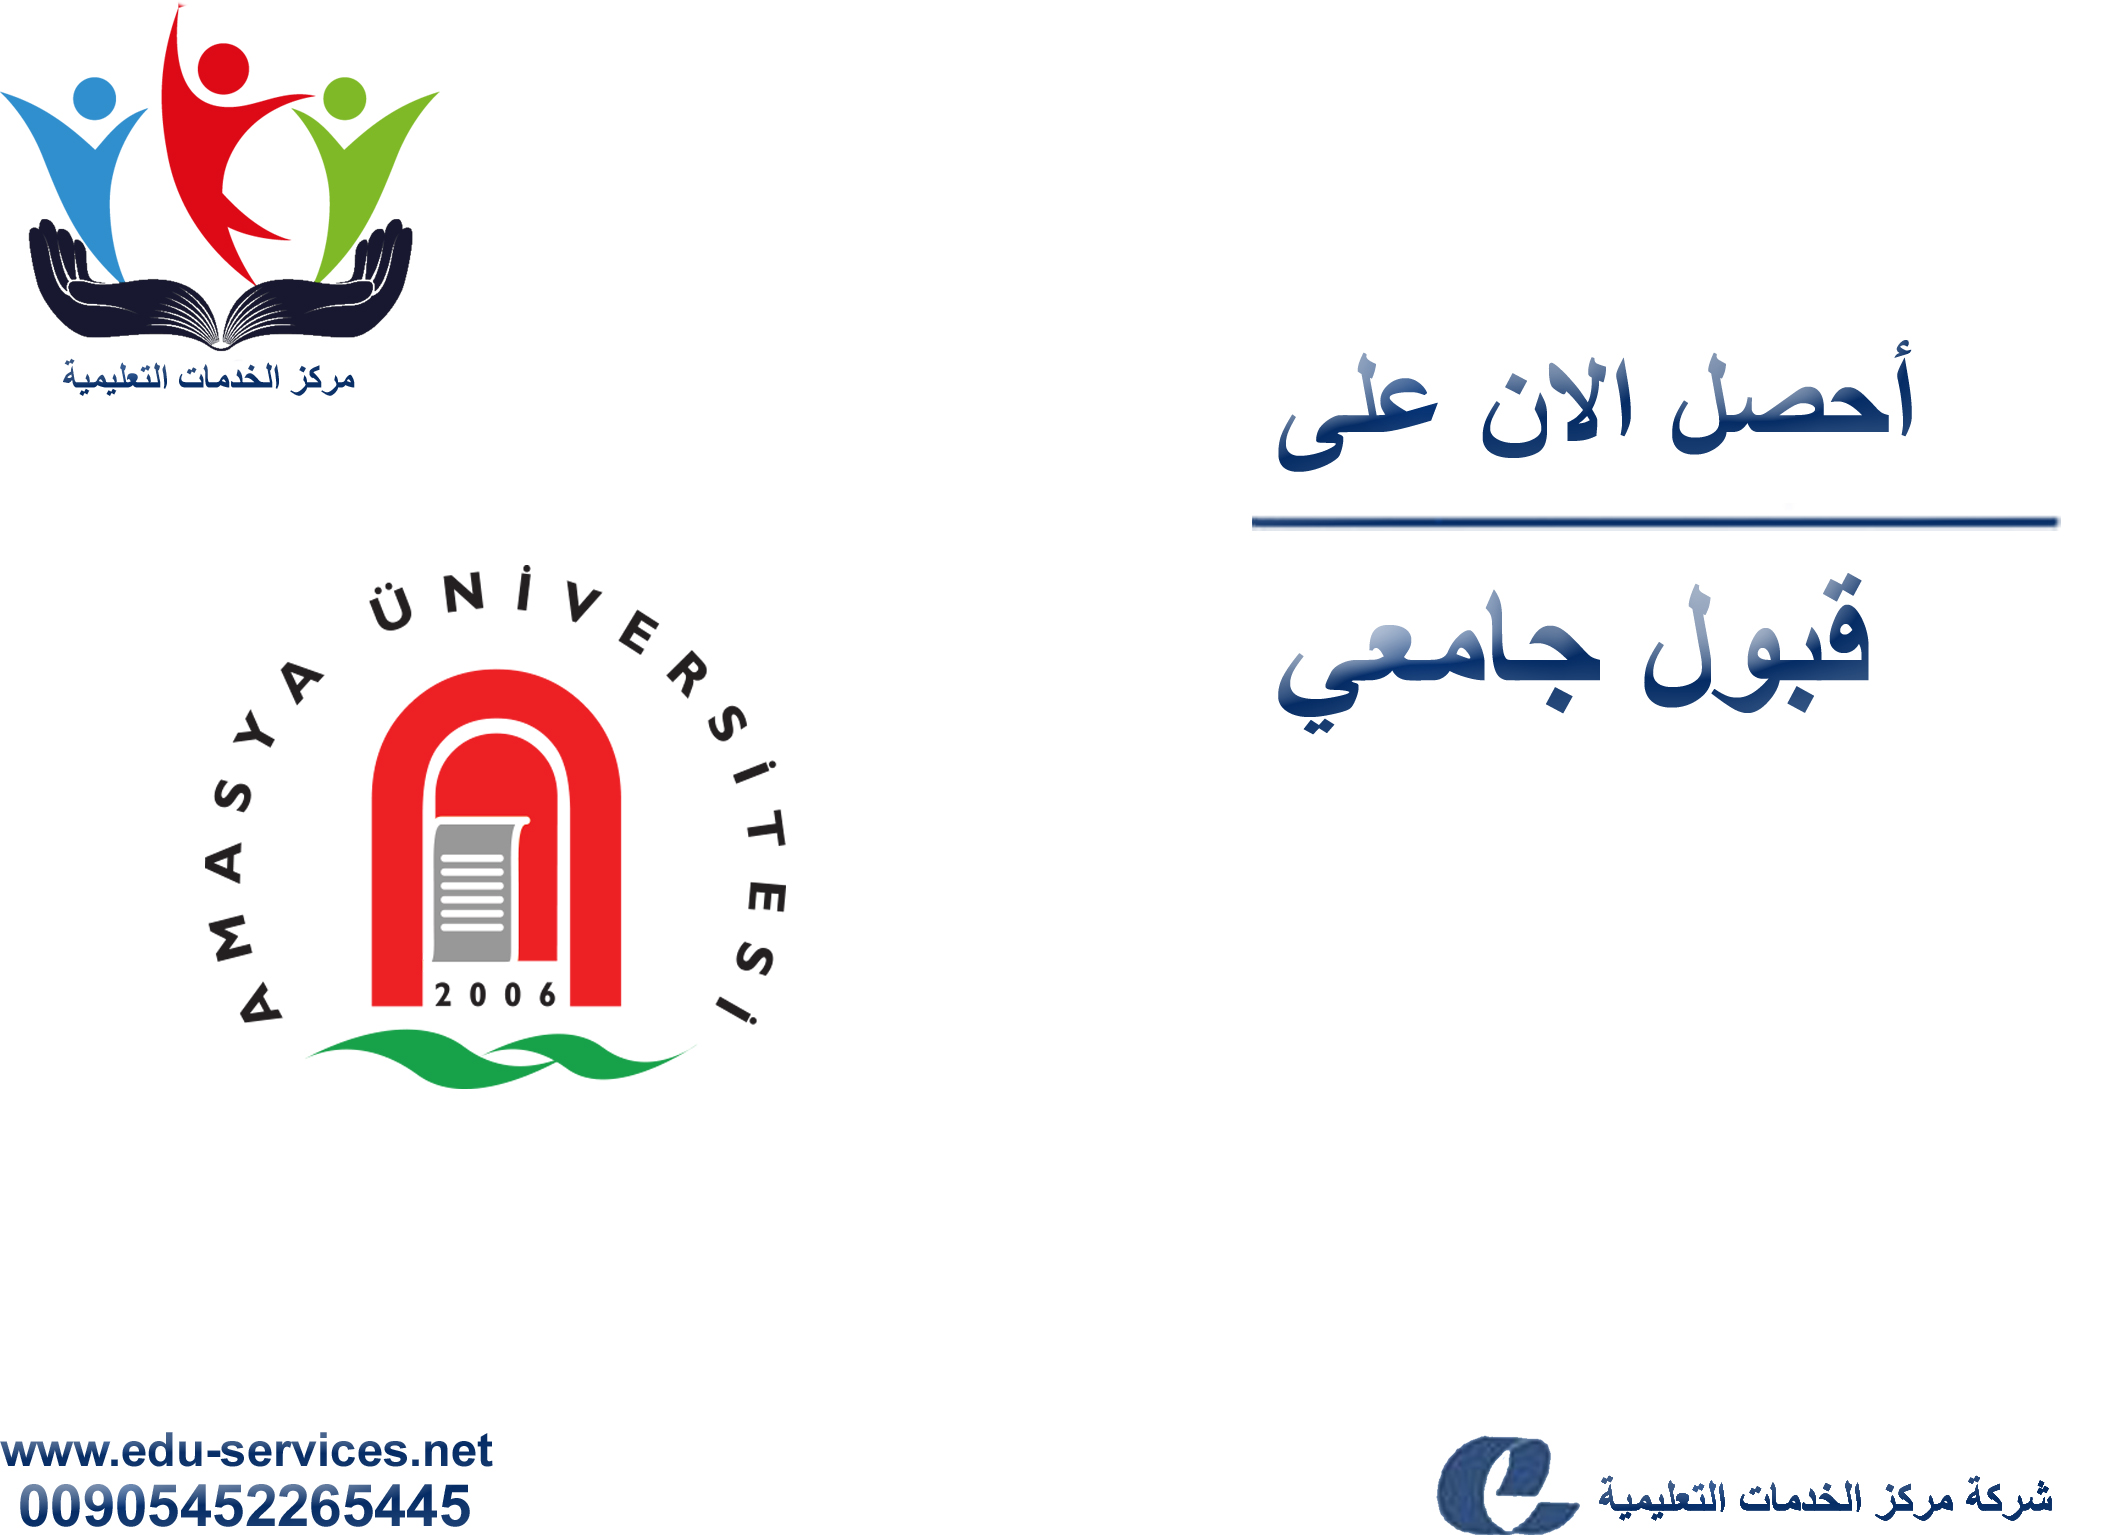 افتتاح التسجيل في جامعة اماسيا للعام 2017-2018